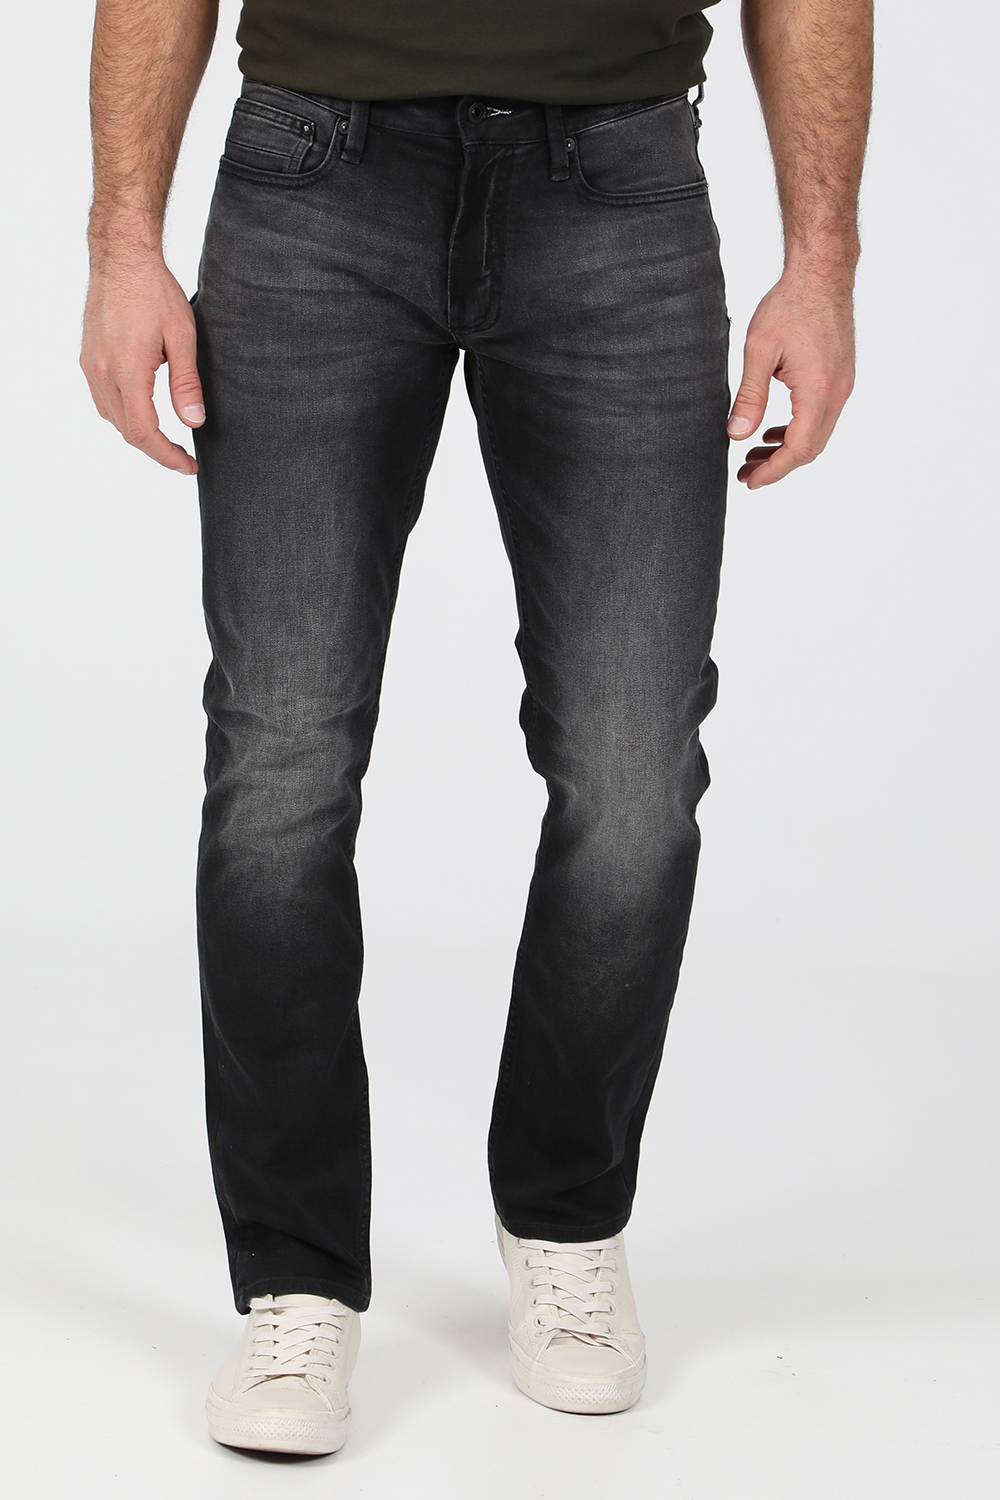 Ανδρικά/Ρούχα/Τζίν/Straight DENHAM - Ανδρικό jean παντελόνι DENHAM RIDGE ACEB γκρι